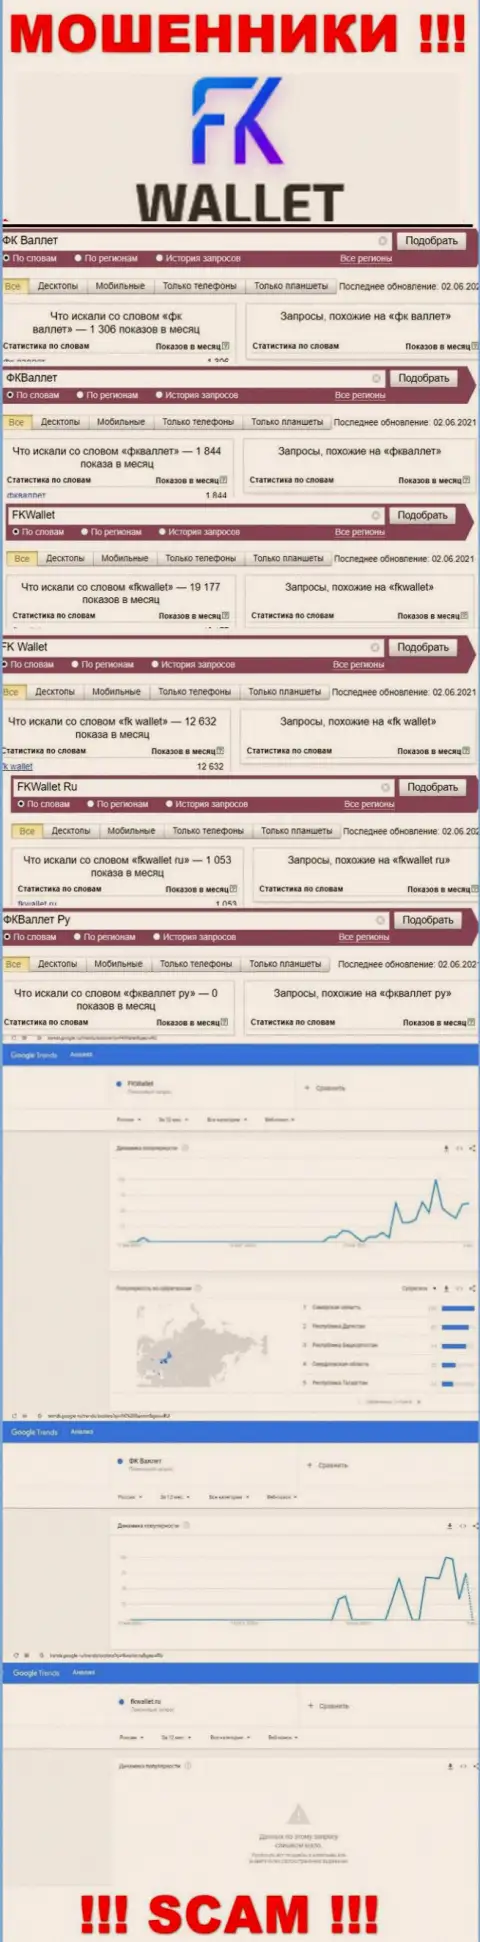 Скриншот статистики online-запросов по жульнической компании ФК Валлет